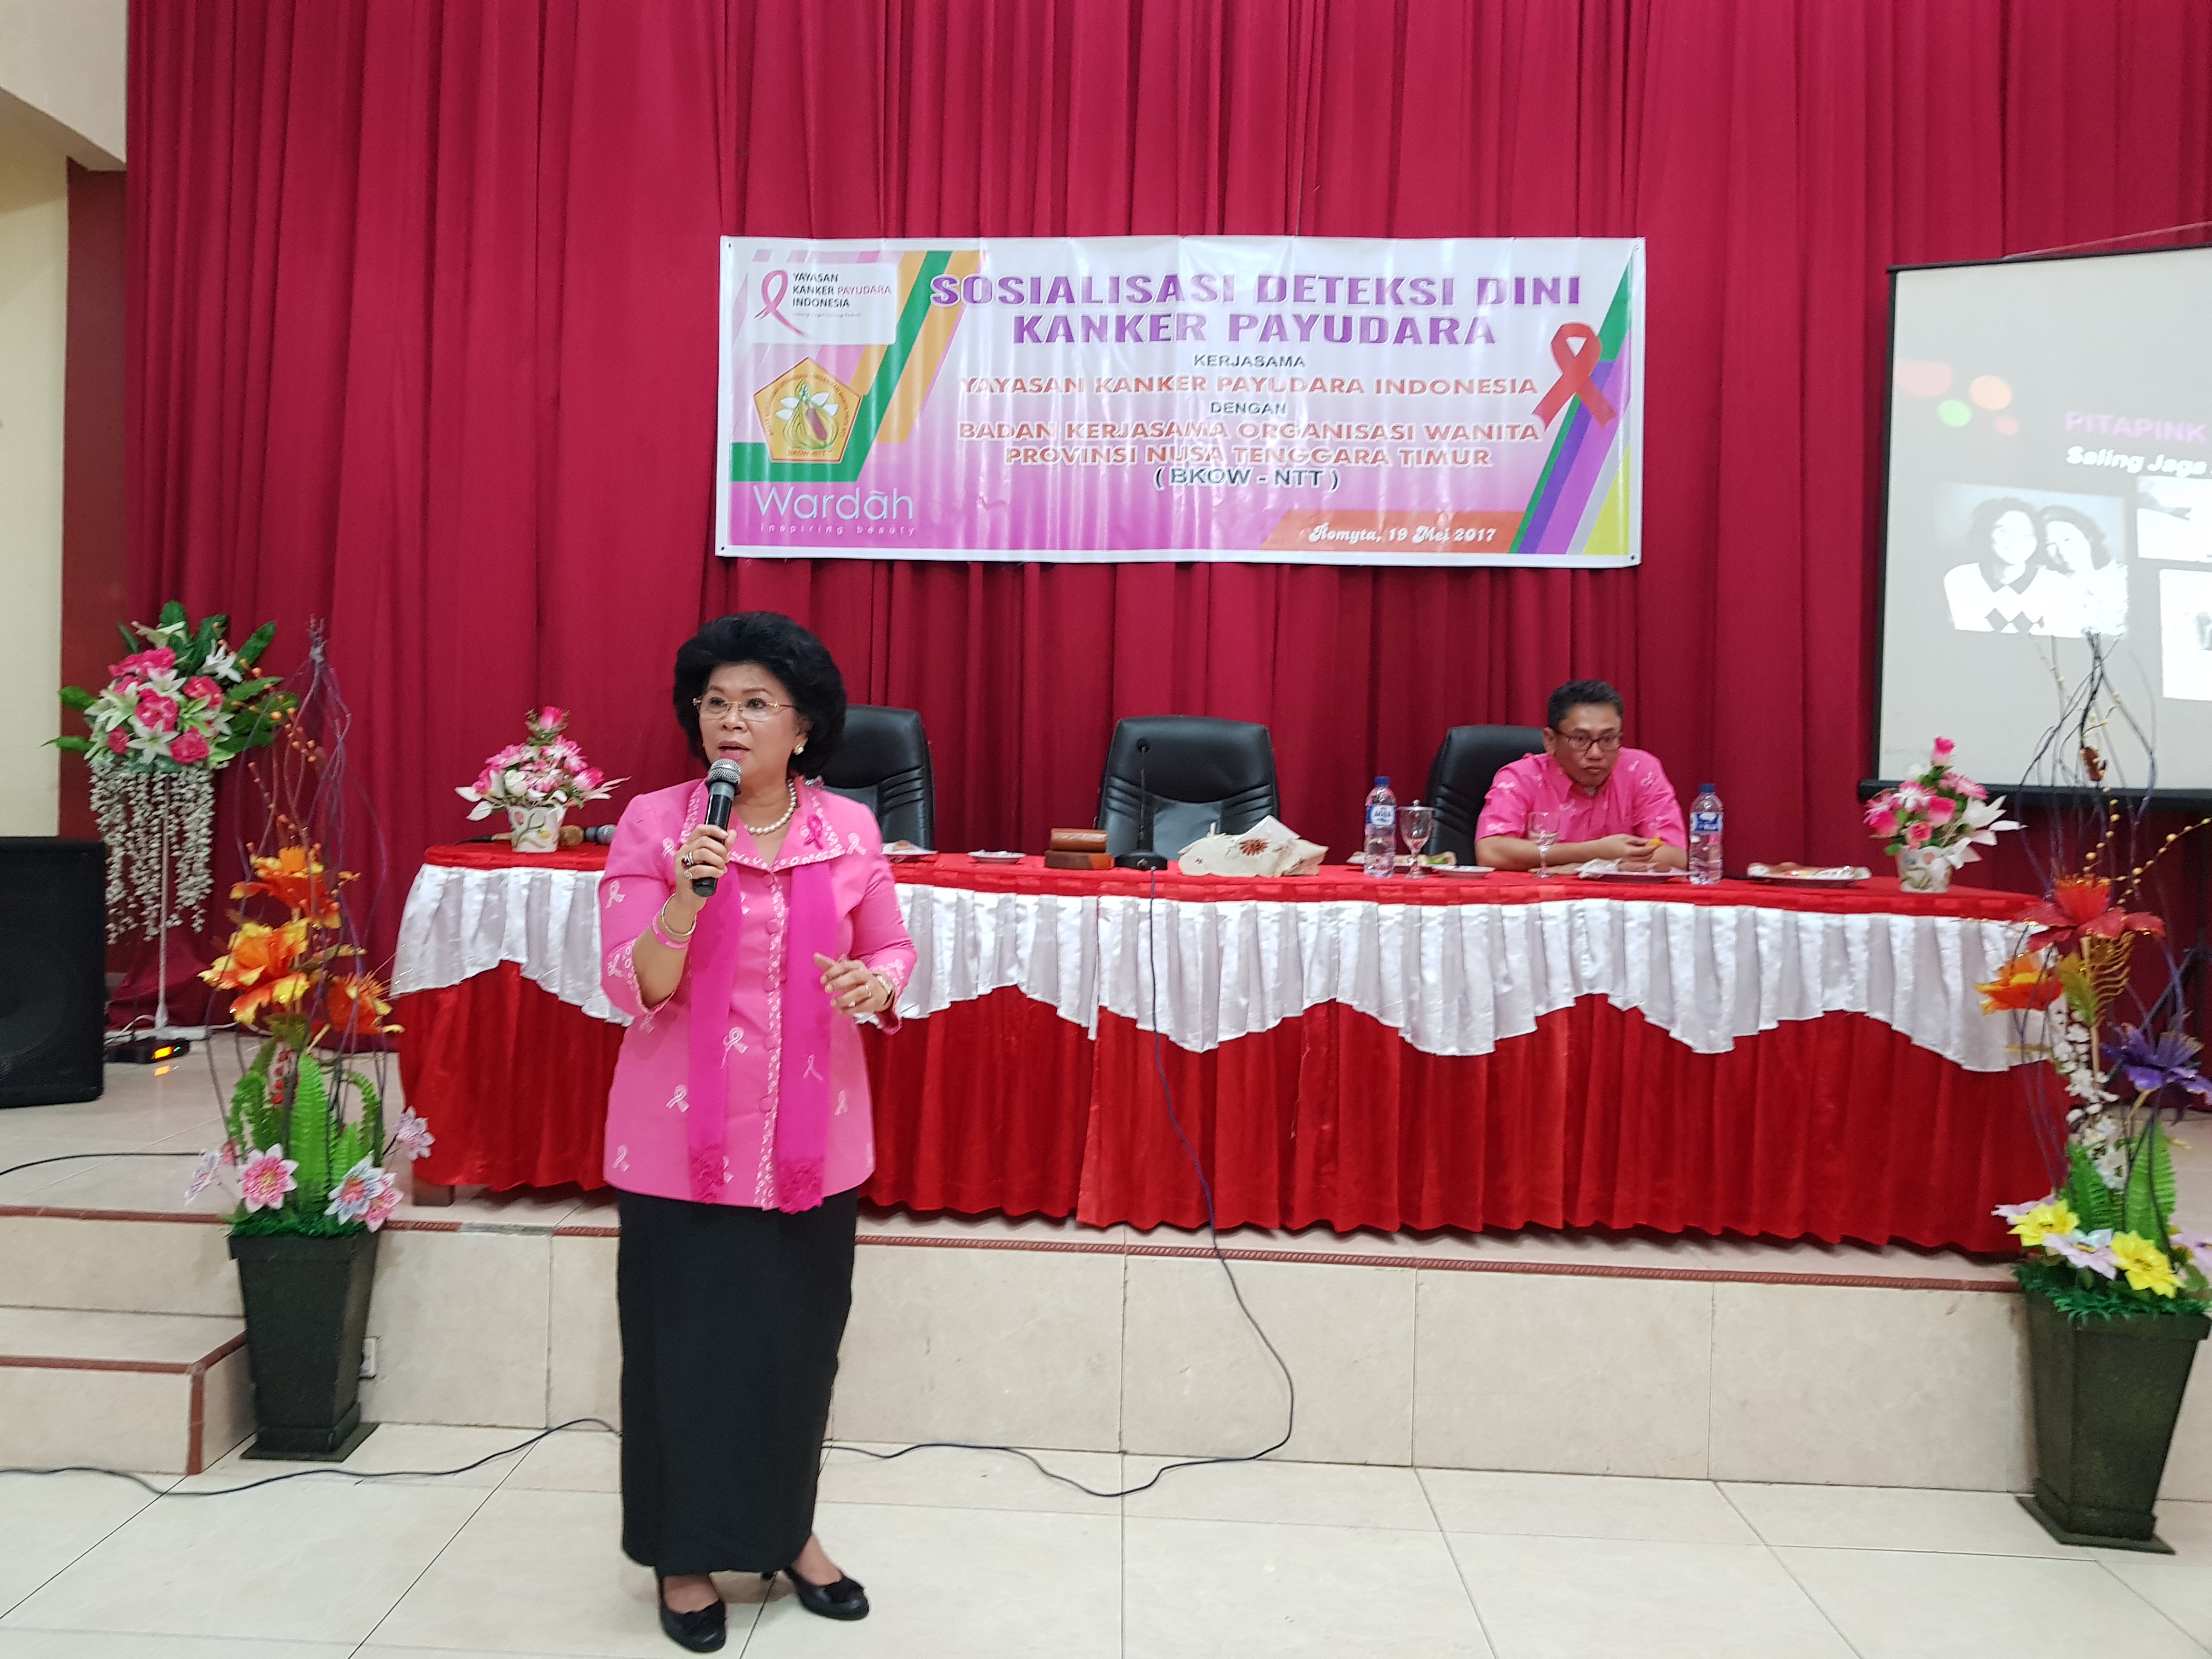 sosialisasi Deteksi Dini Kanker Payudara kerjasama dengan Badan Kerjasama Organisasi Wanita ( BKOW ) NTT tanggal 19 mei 2017